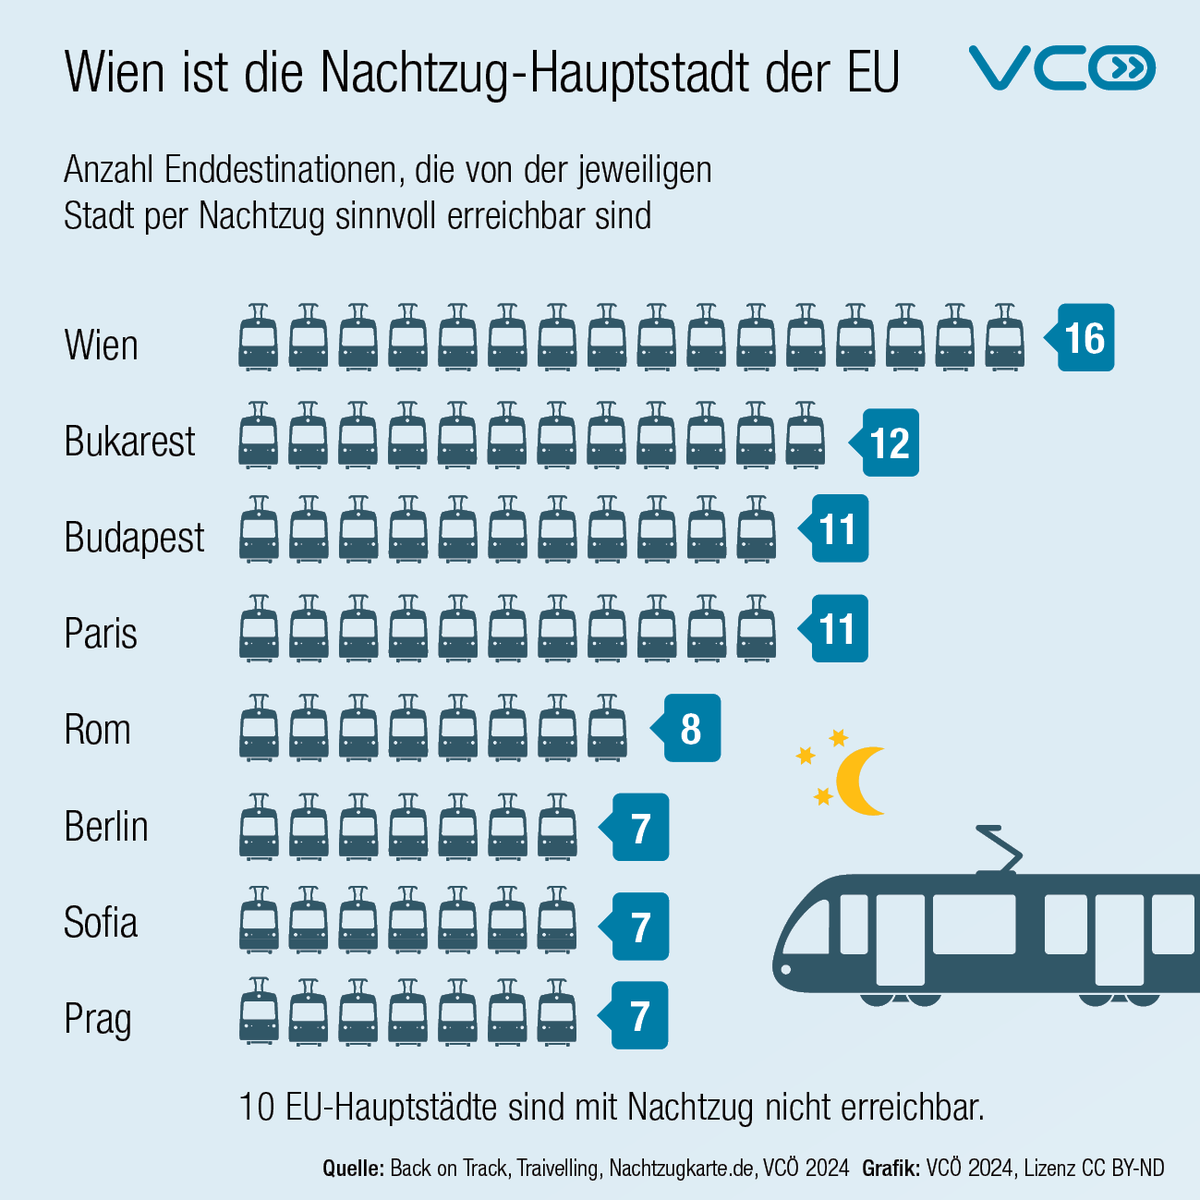 #Wien ist die #Nachtzug-Hauptstadt in der #EU mit den meisten Verbindungen. Nur 17 EU-Hauptstädte sind mit einem Nachtzug erreichbar. Europa braucht mehr #Bahn - die Bahnen brauchen mehr europäisches Denken & Handeln!